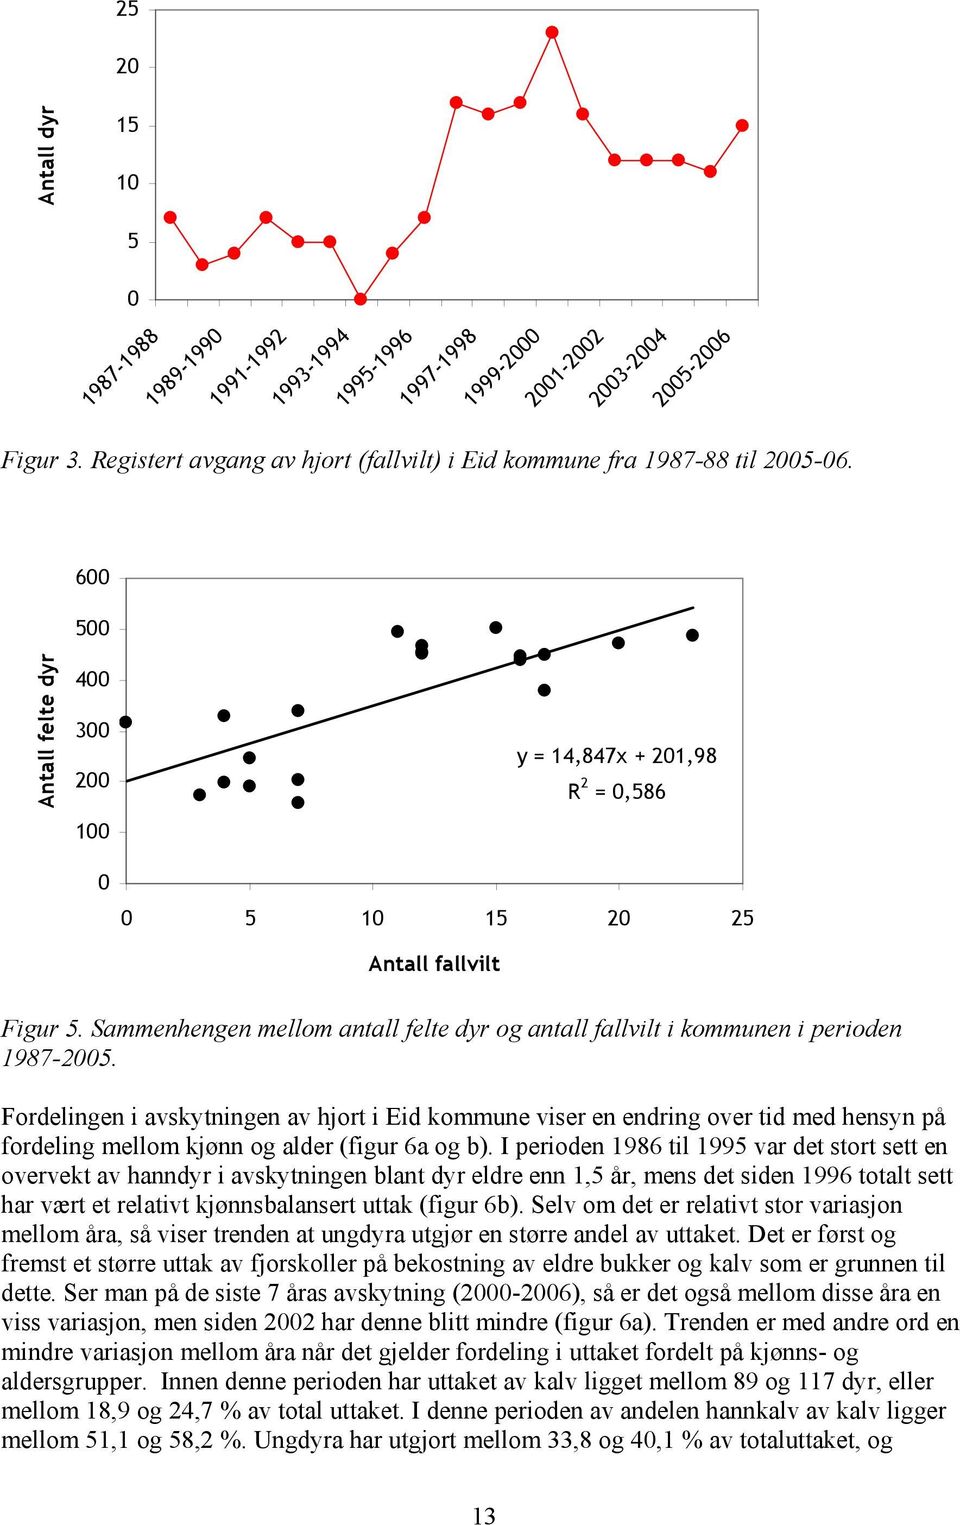 Fordelingen i avskytningen av hjort i Eid kommune viser en endring over tid med hensyn på fordeling mellom kjønn og alder (figur a og b).